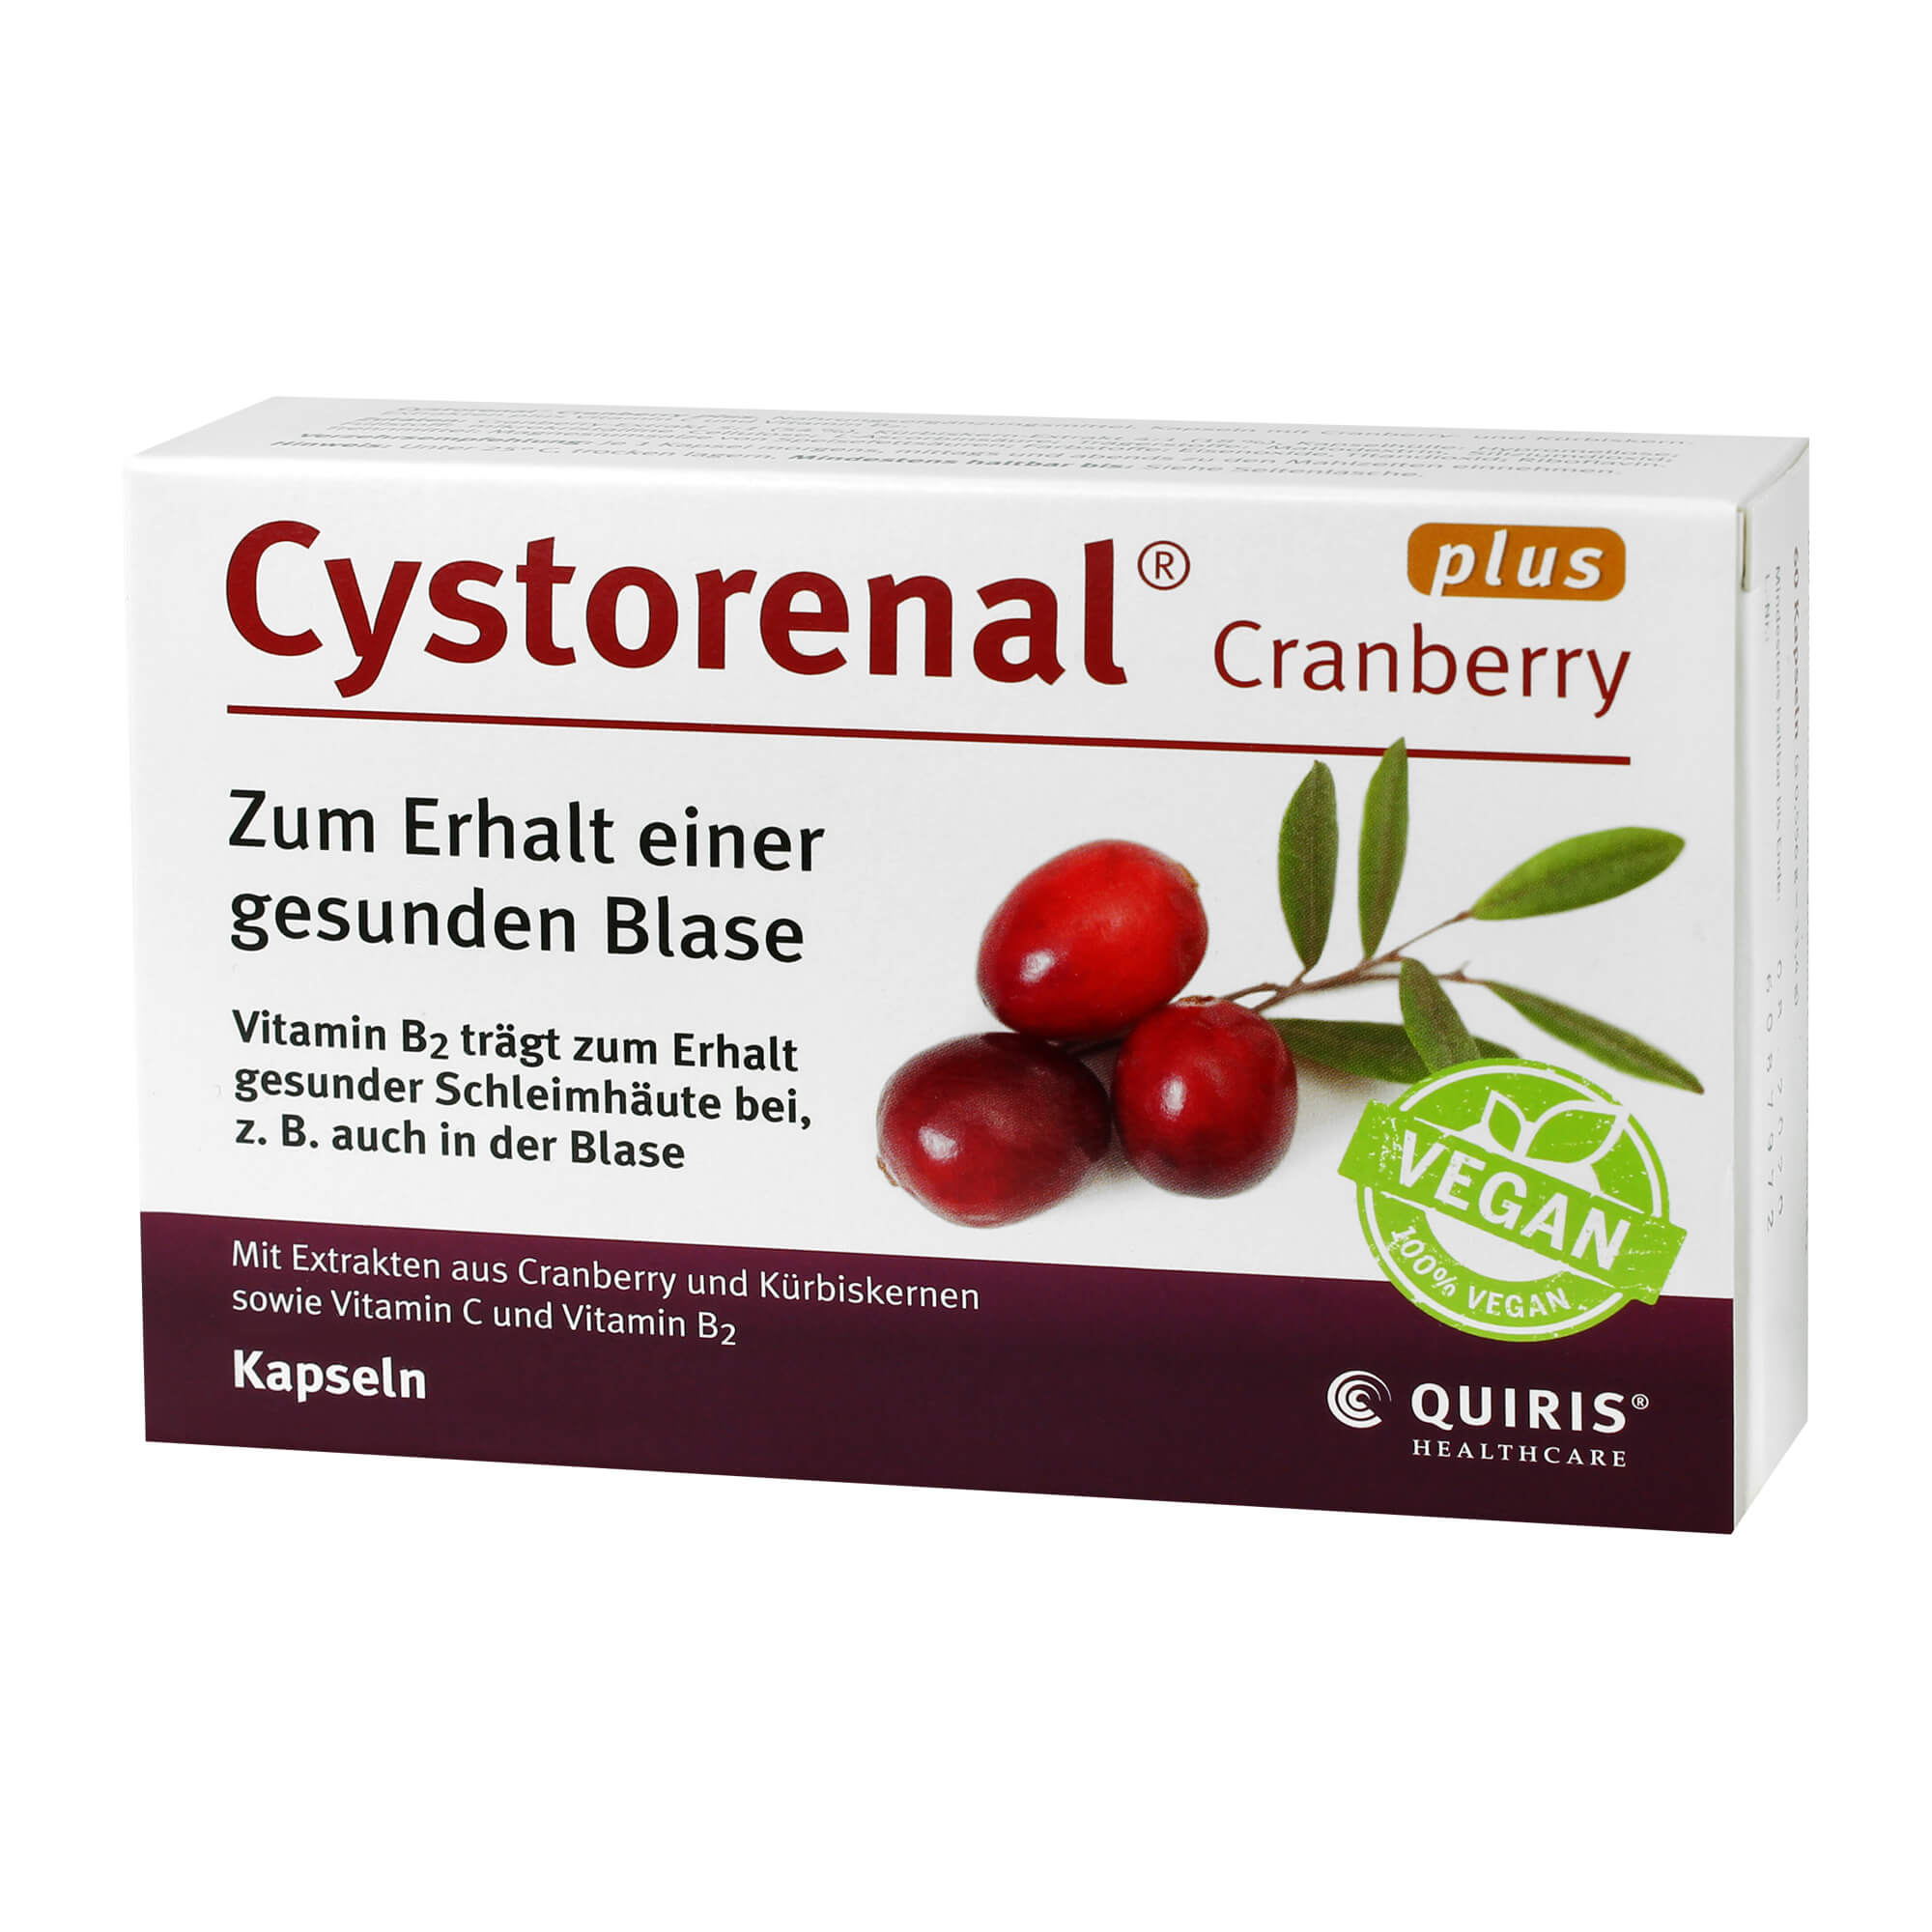 Nahrungsergänzungsmittel mit Extrakten aus Cranberry und Kürbiskernen sowie Vitamin C und Vitamin B2.